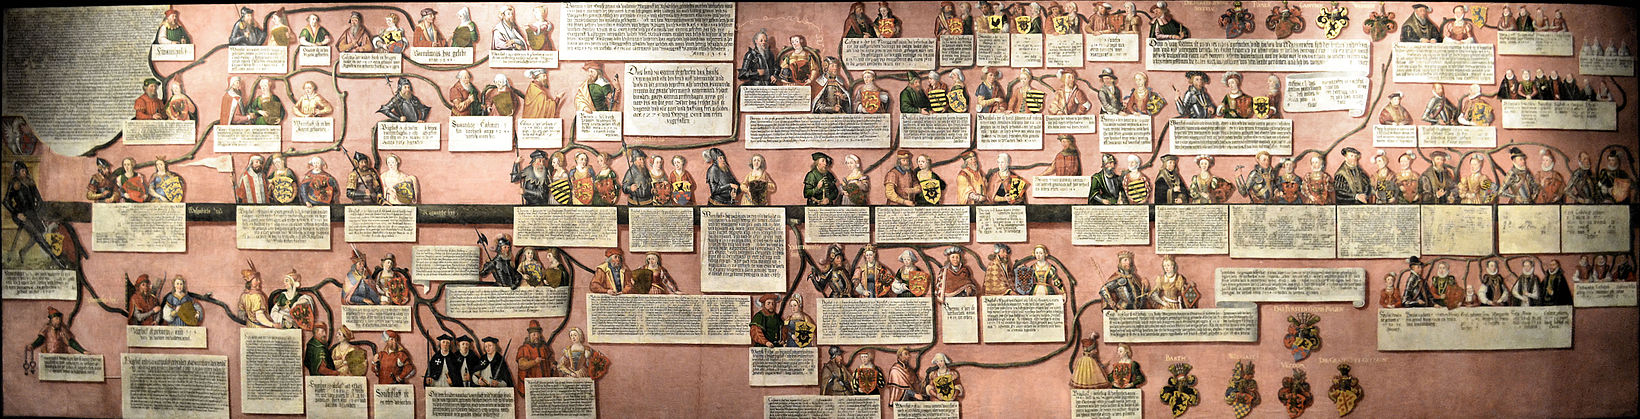 Drzewo genealogiczne książąt Pomorza Zachodniego, autor: Cornelius Krommeny, 1598 r. Na obrazie o długości 7 m przedstawiono 155 osób z rodu Gryfitów. Eksponat Muzeum Narodowego w Szczecinie